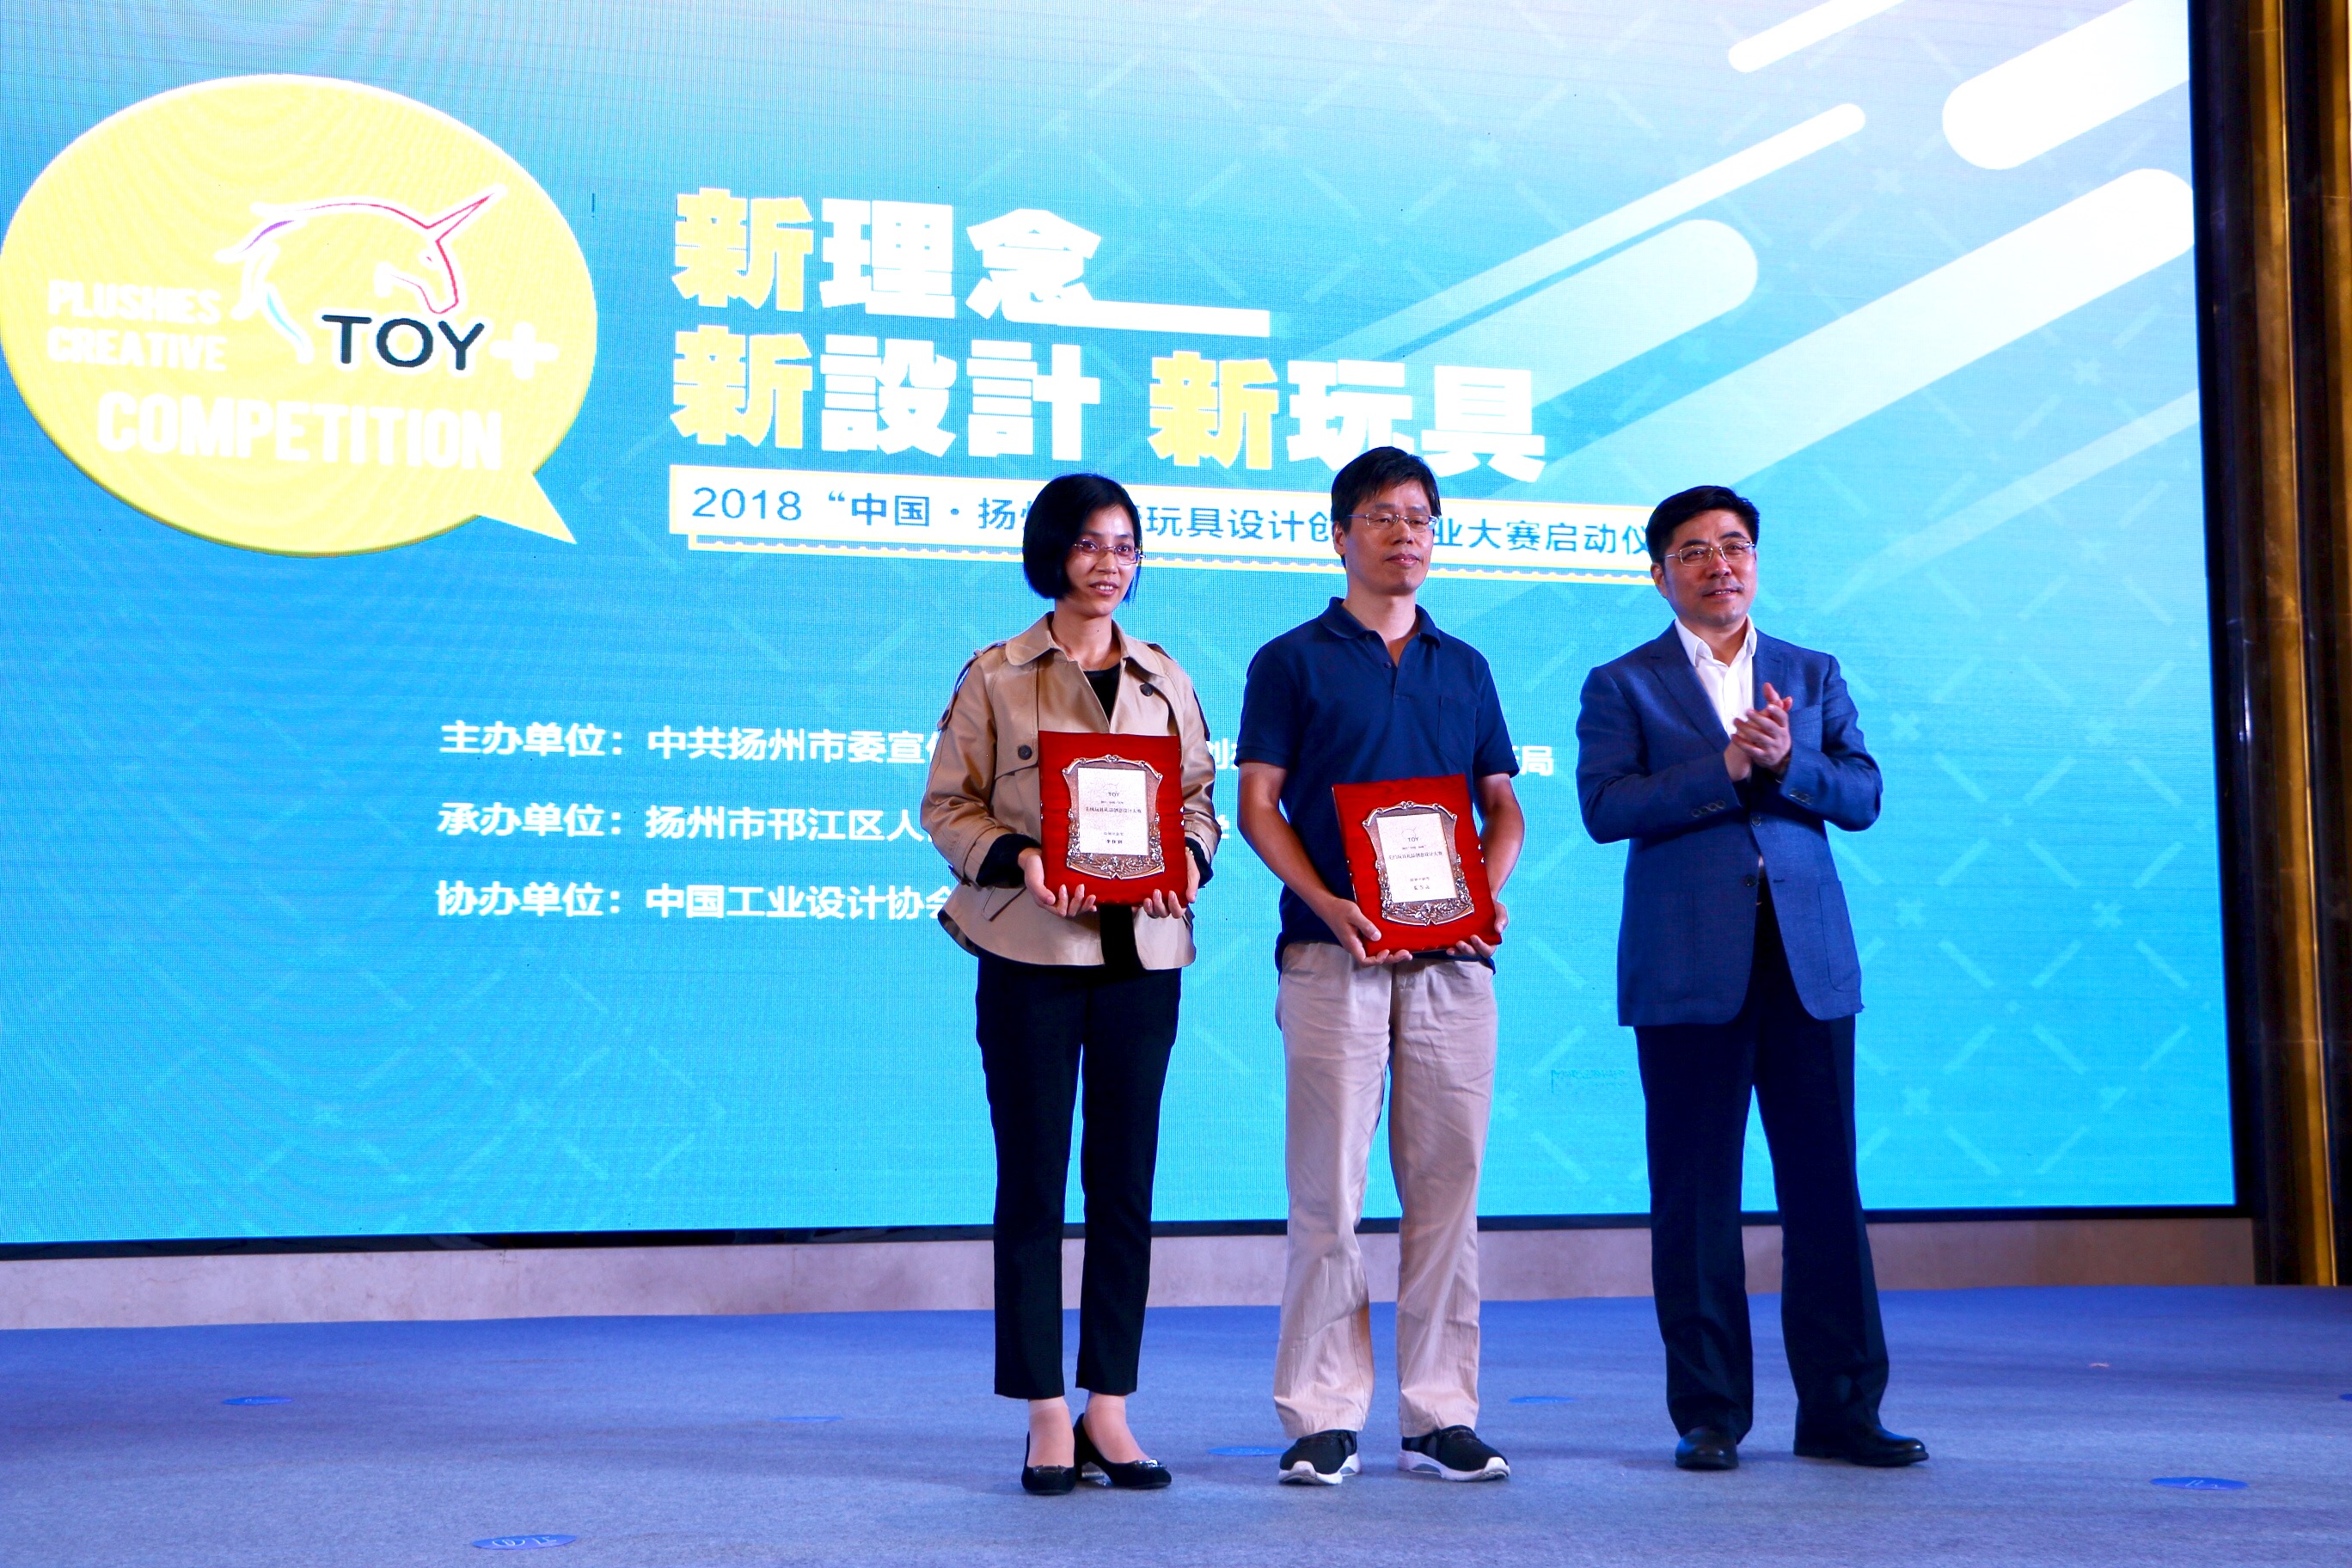 2018中国·扬州新玩具设计创新创业大赛启动